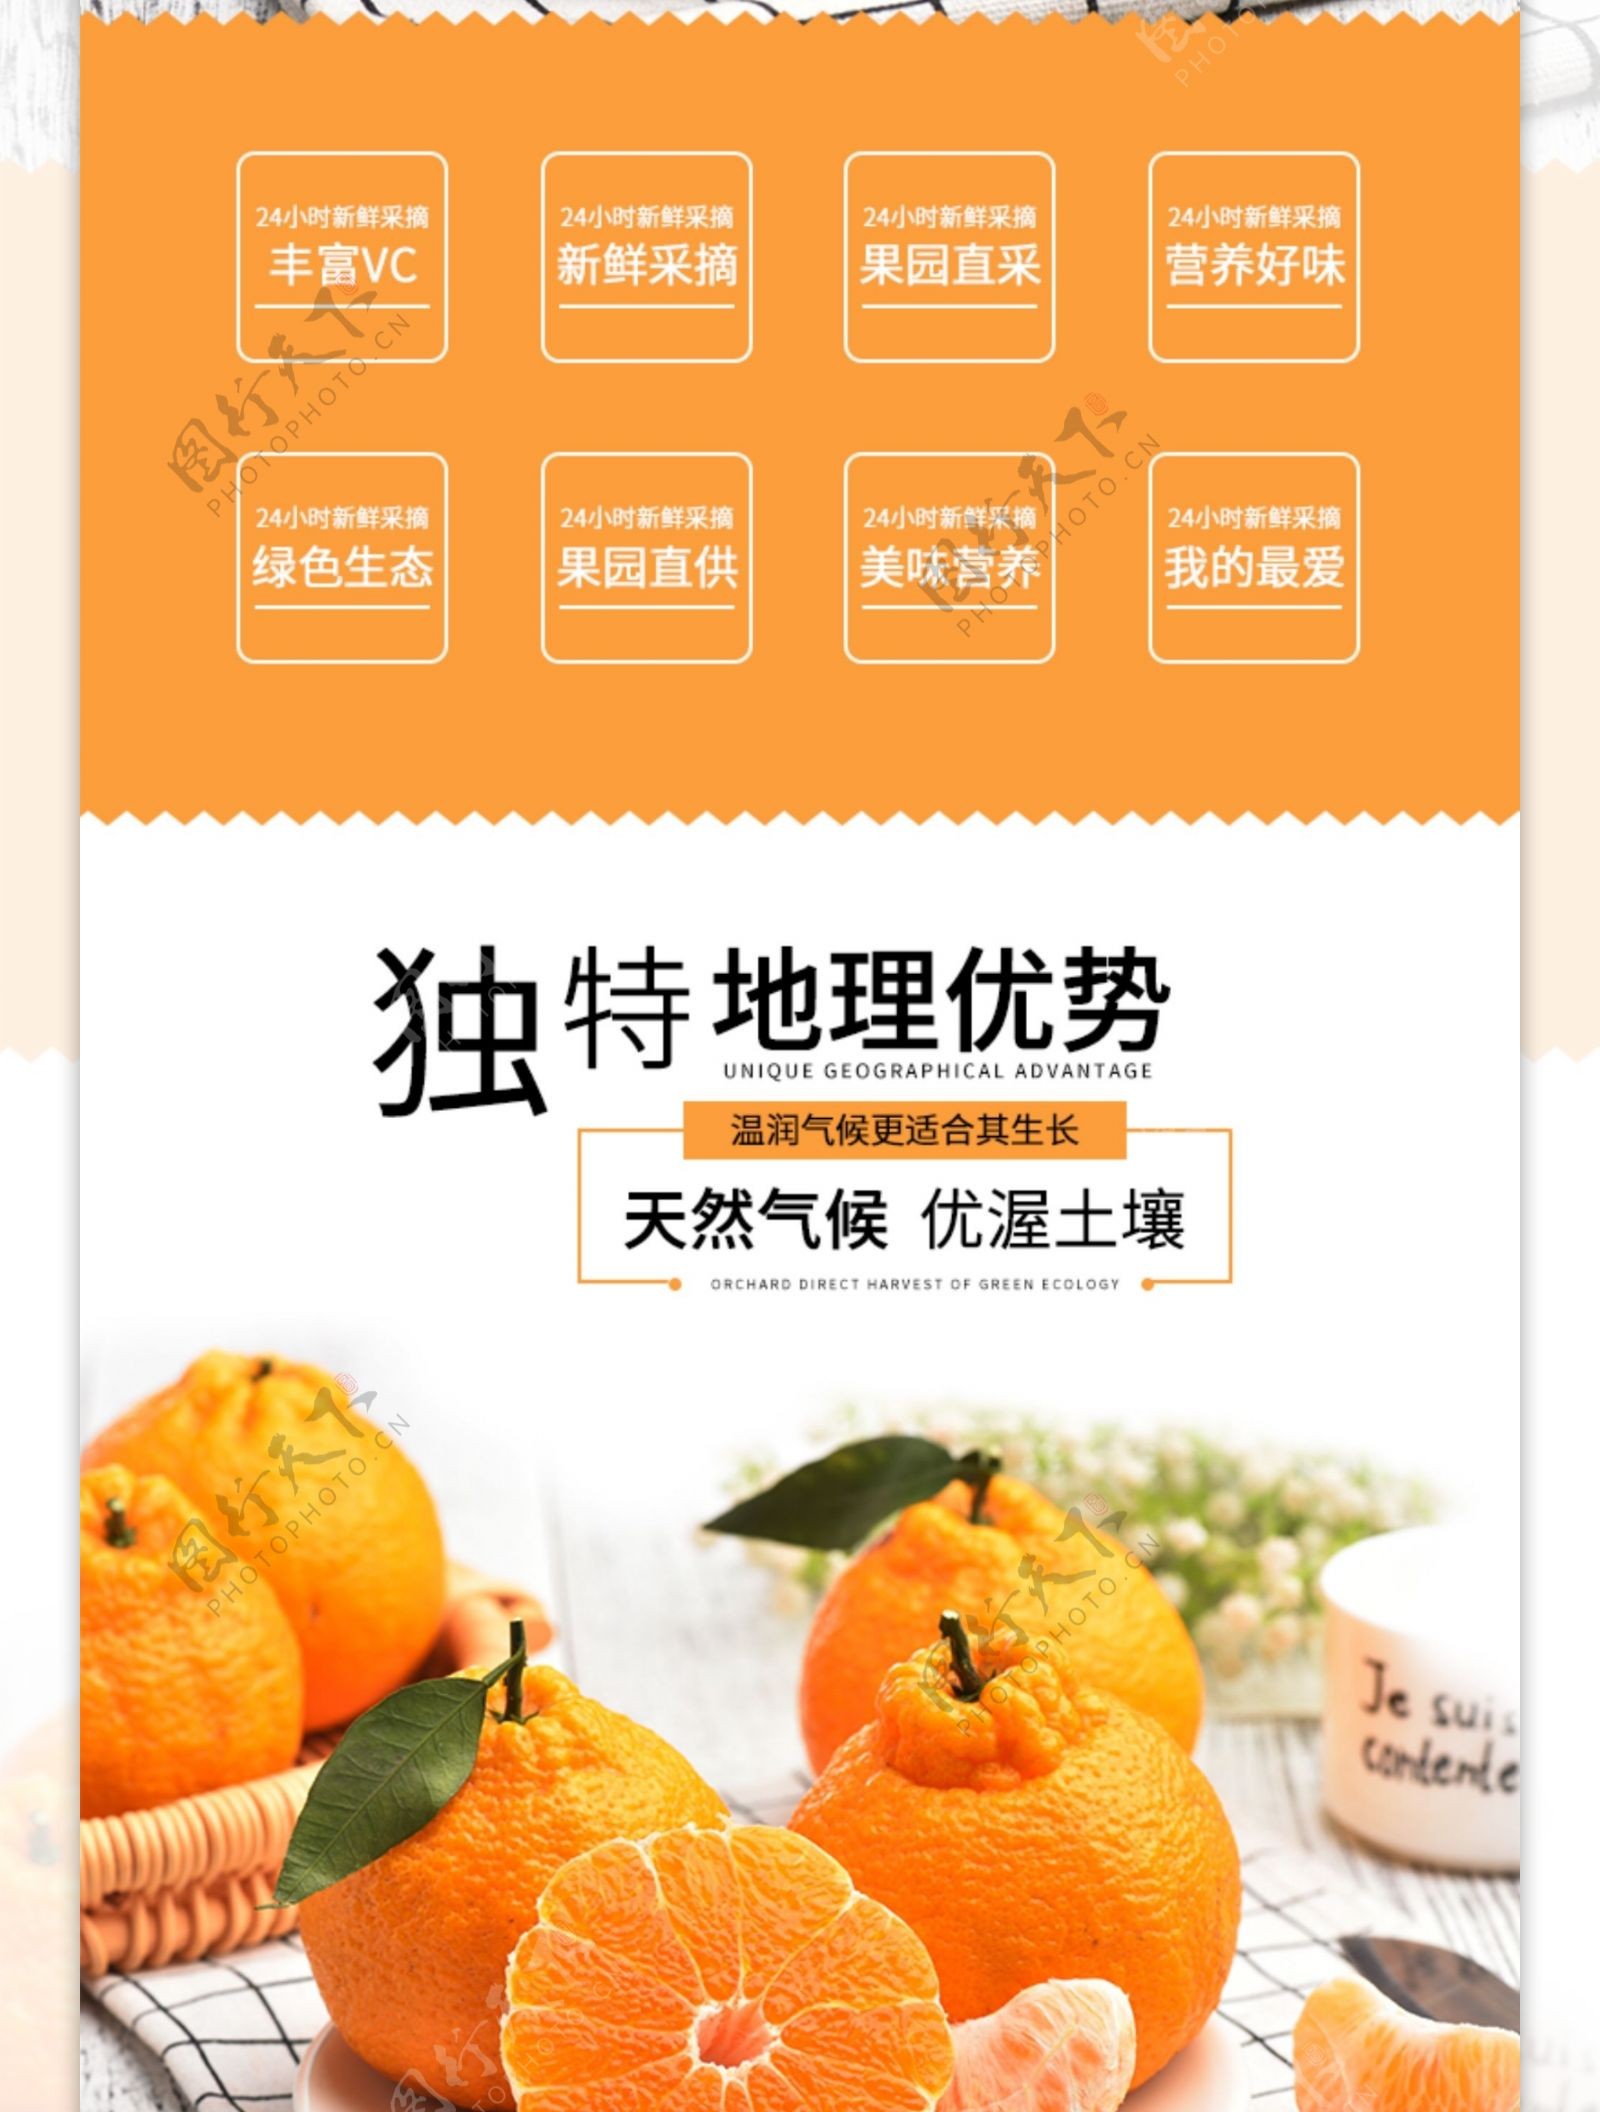 营养好味道丑橘促销淘宝详情页